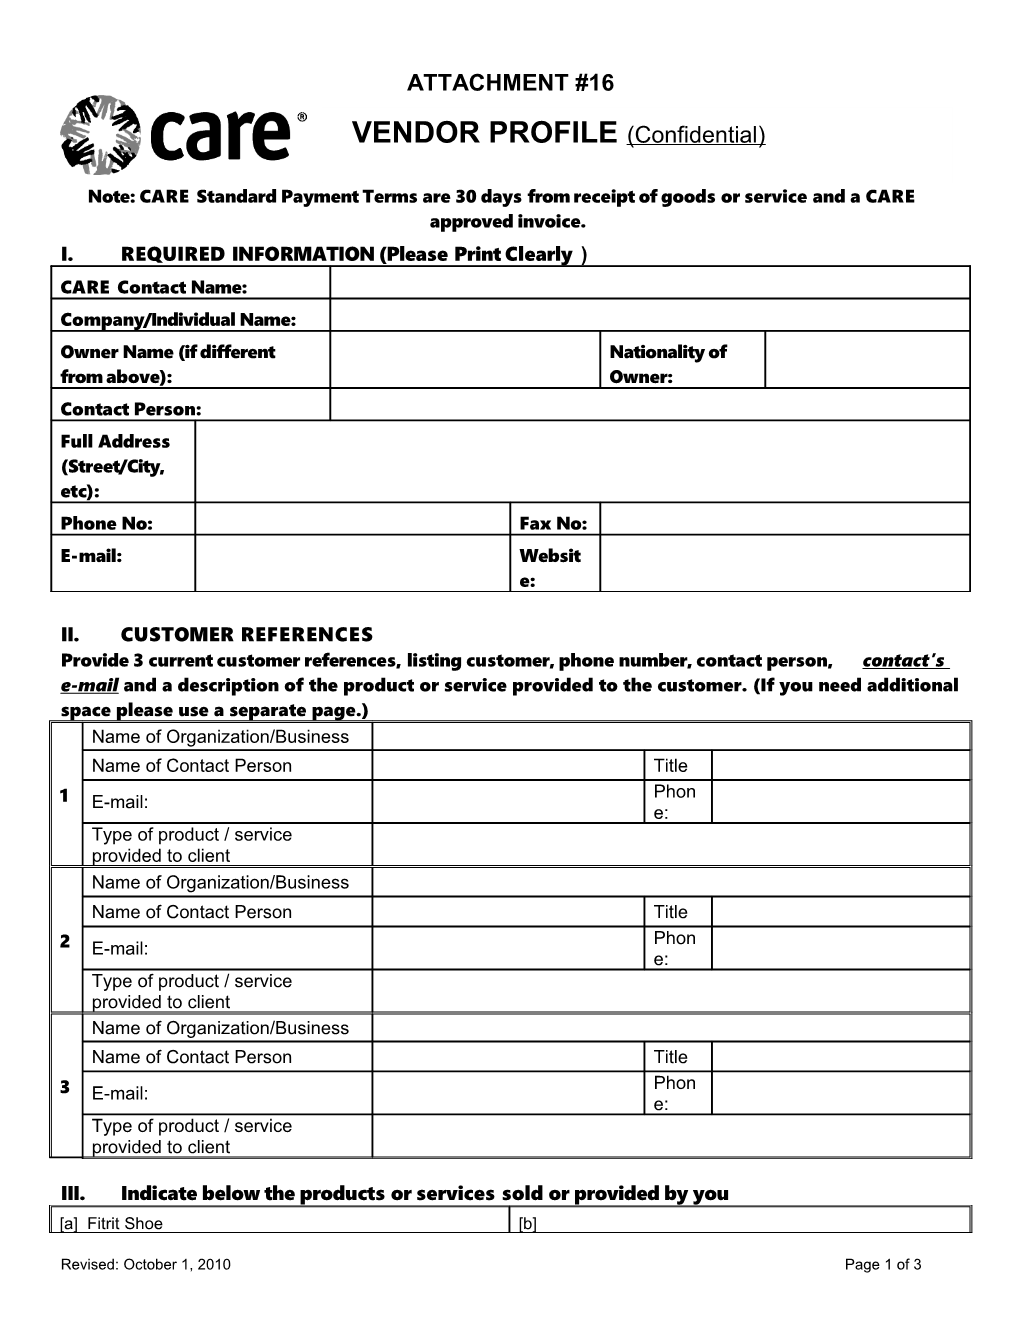 Vendor Questionnaire Form 1.21.04